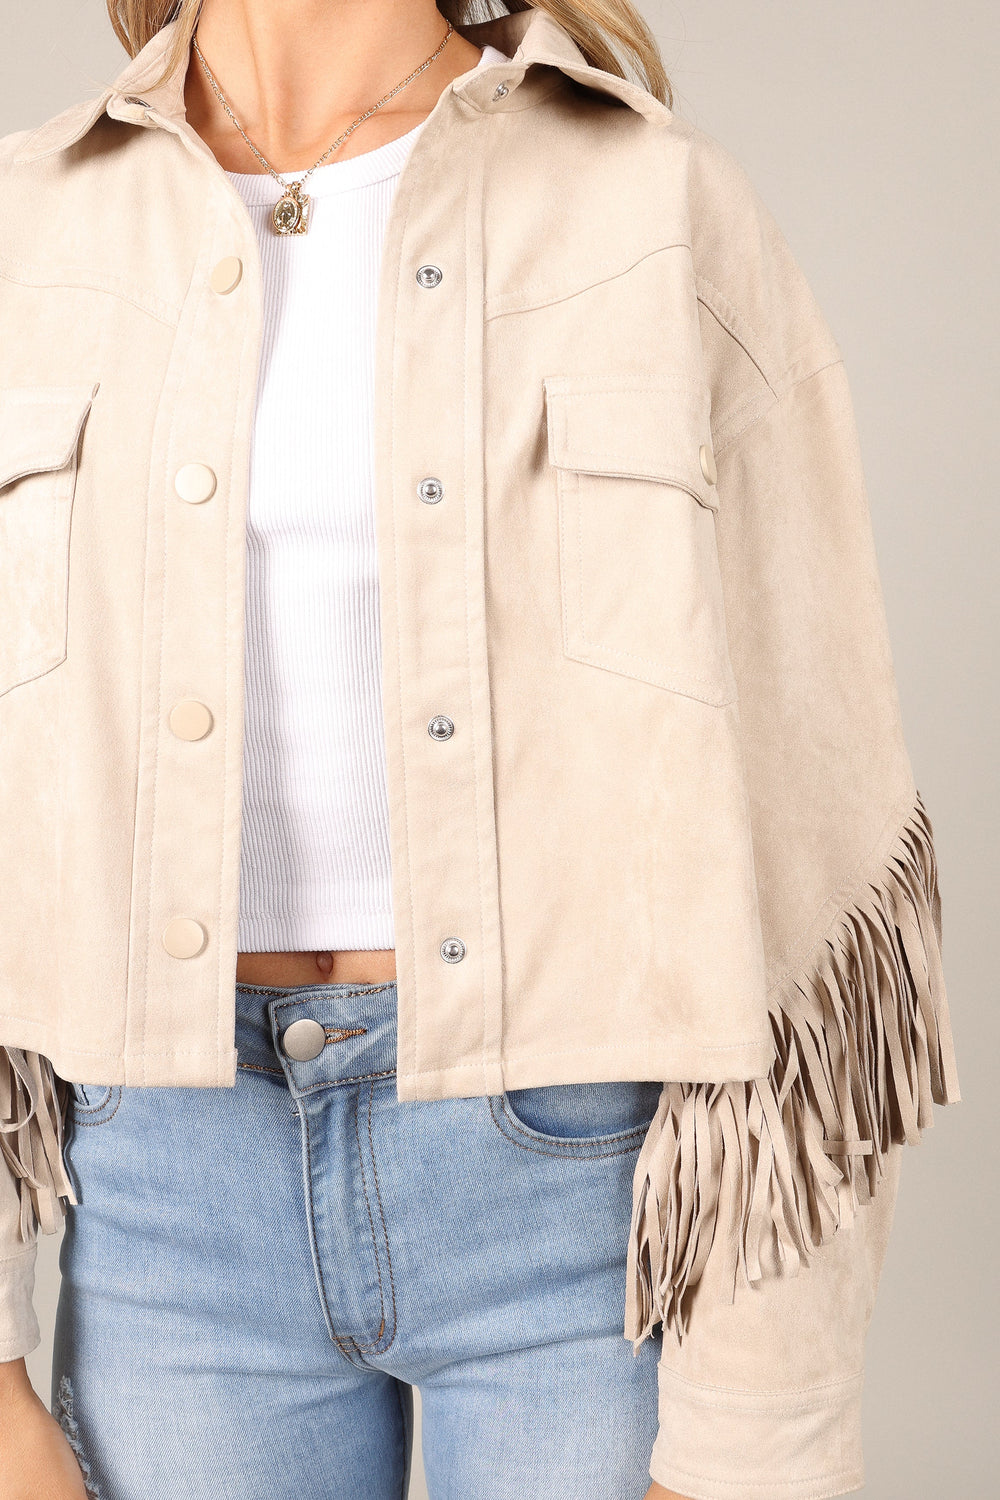 Outerwear @Jenna Fringe Crop Jacket - Ivory